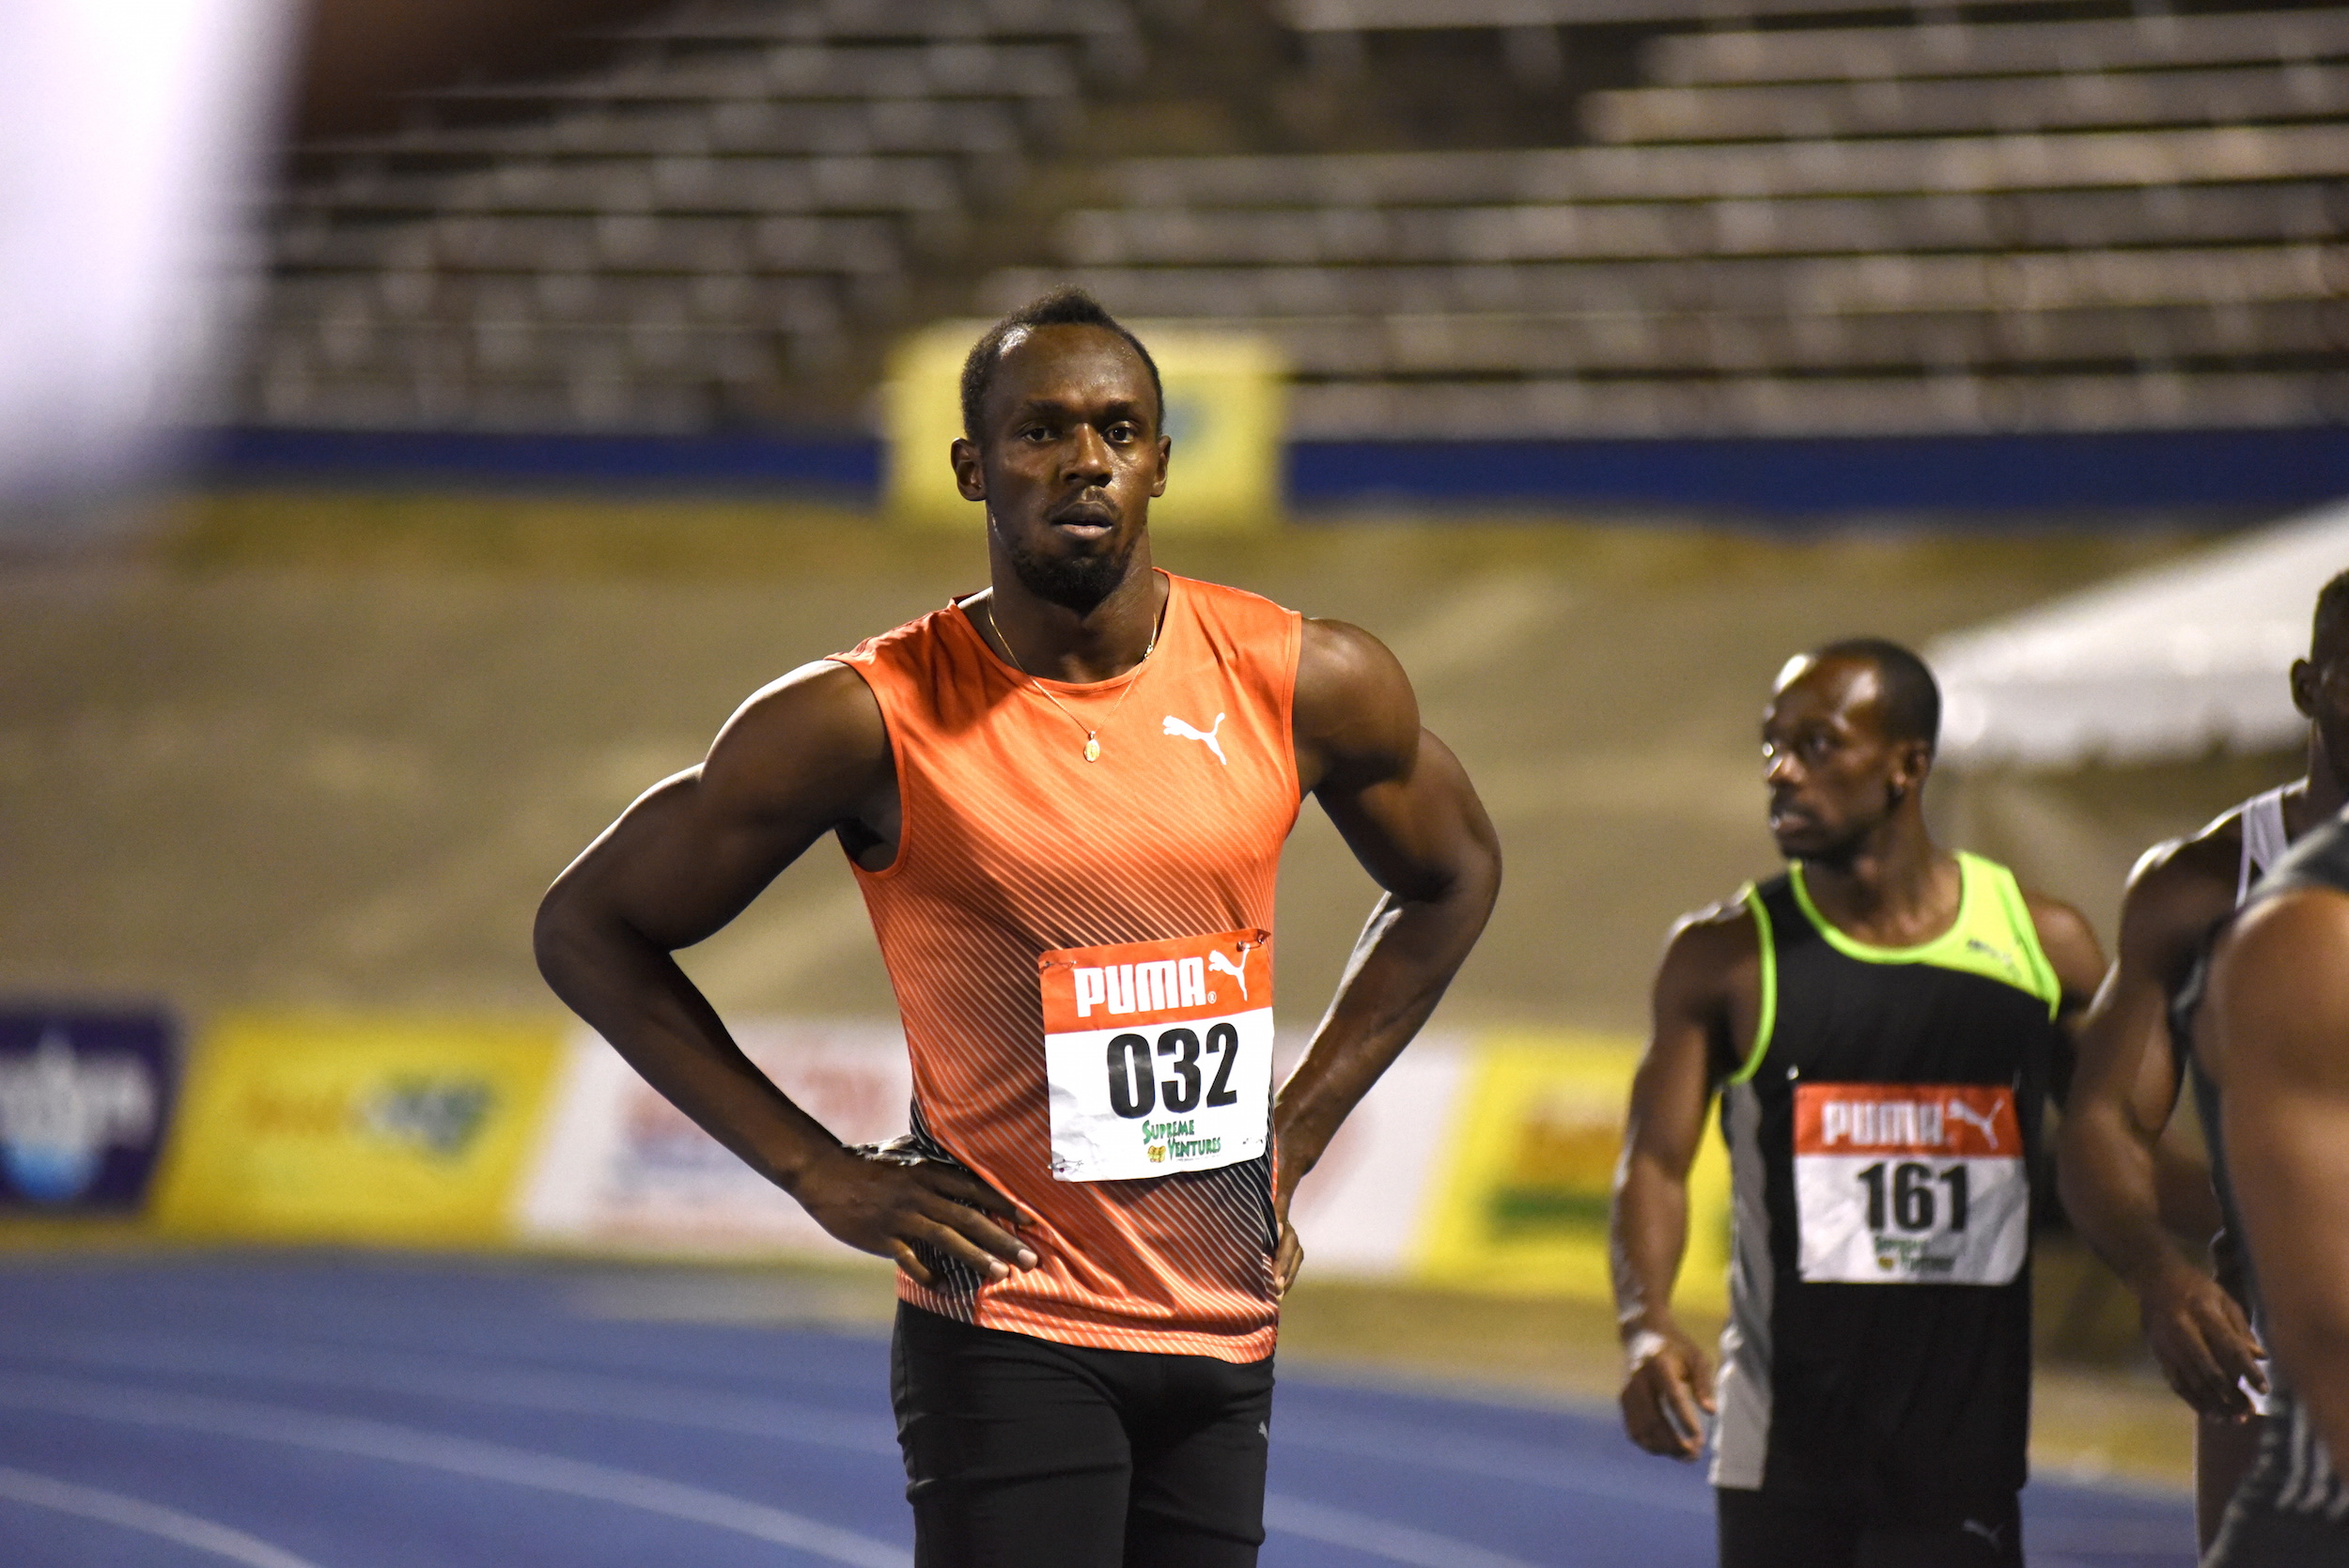 Скорость усейна болта в км ч. Usain Bolt Run. Усейн болт фото с улыбкой. Джавадов Усейн ага бала. Usain Bolt Running Episode.